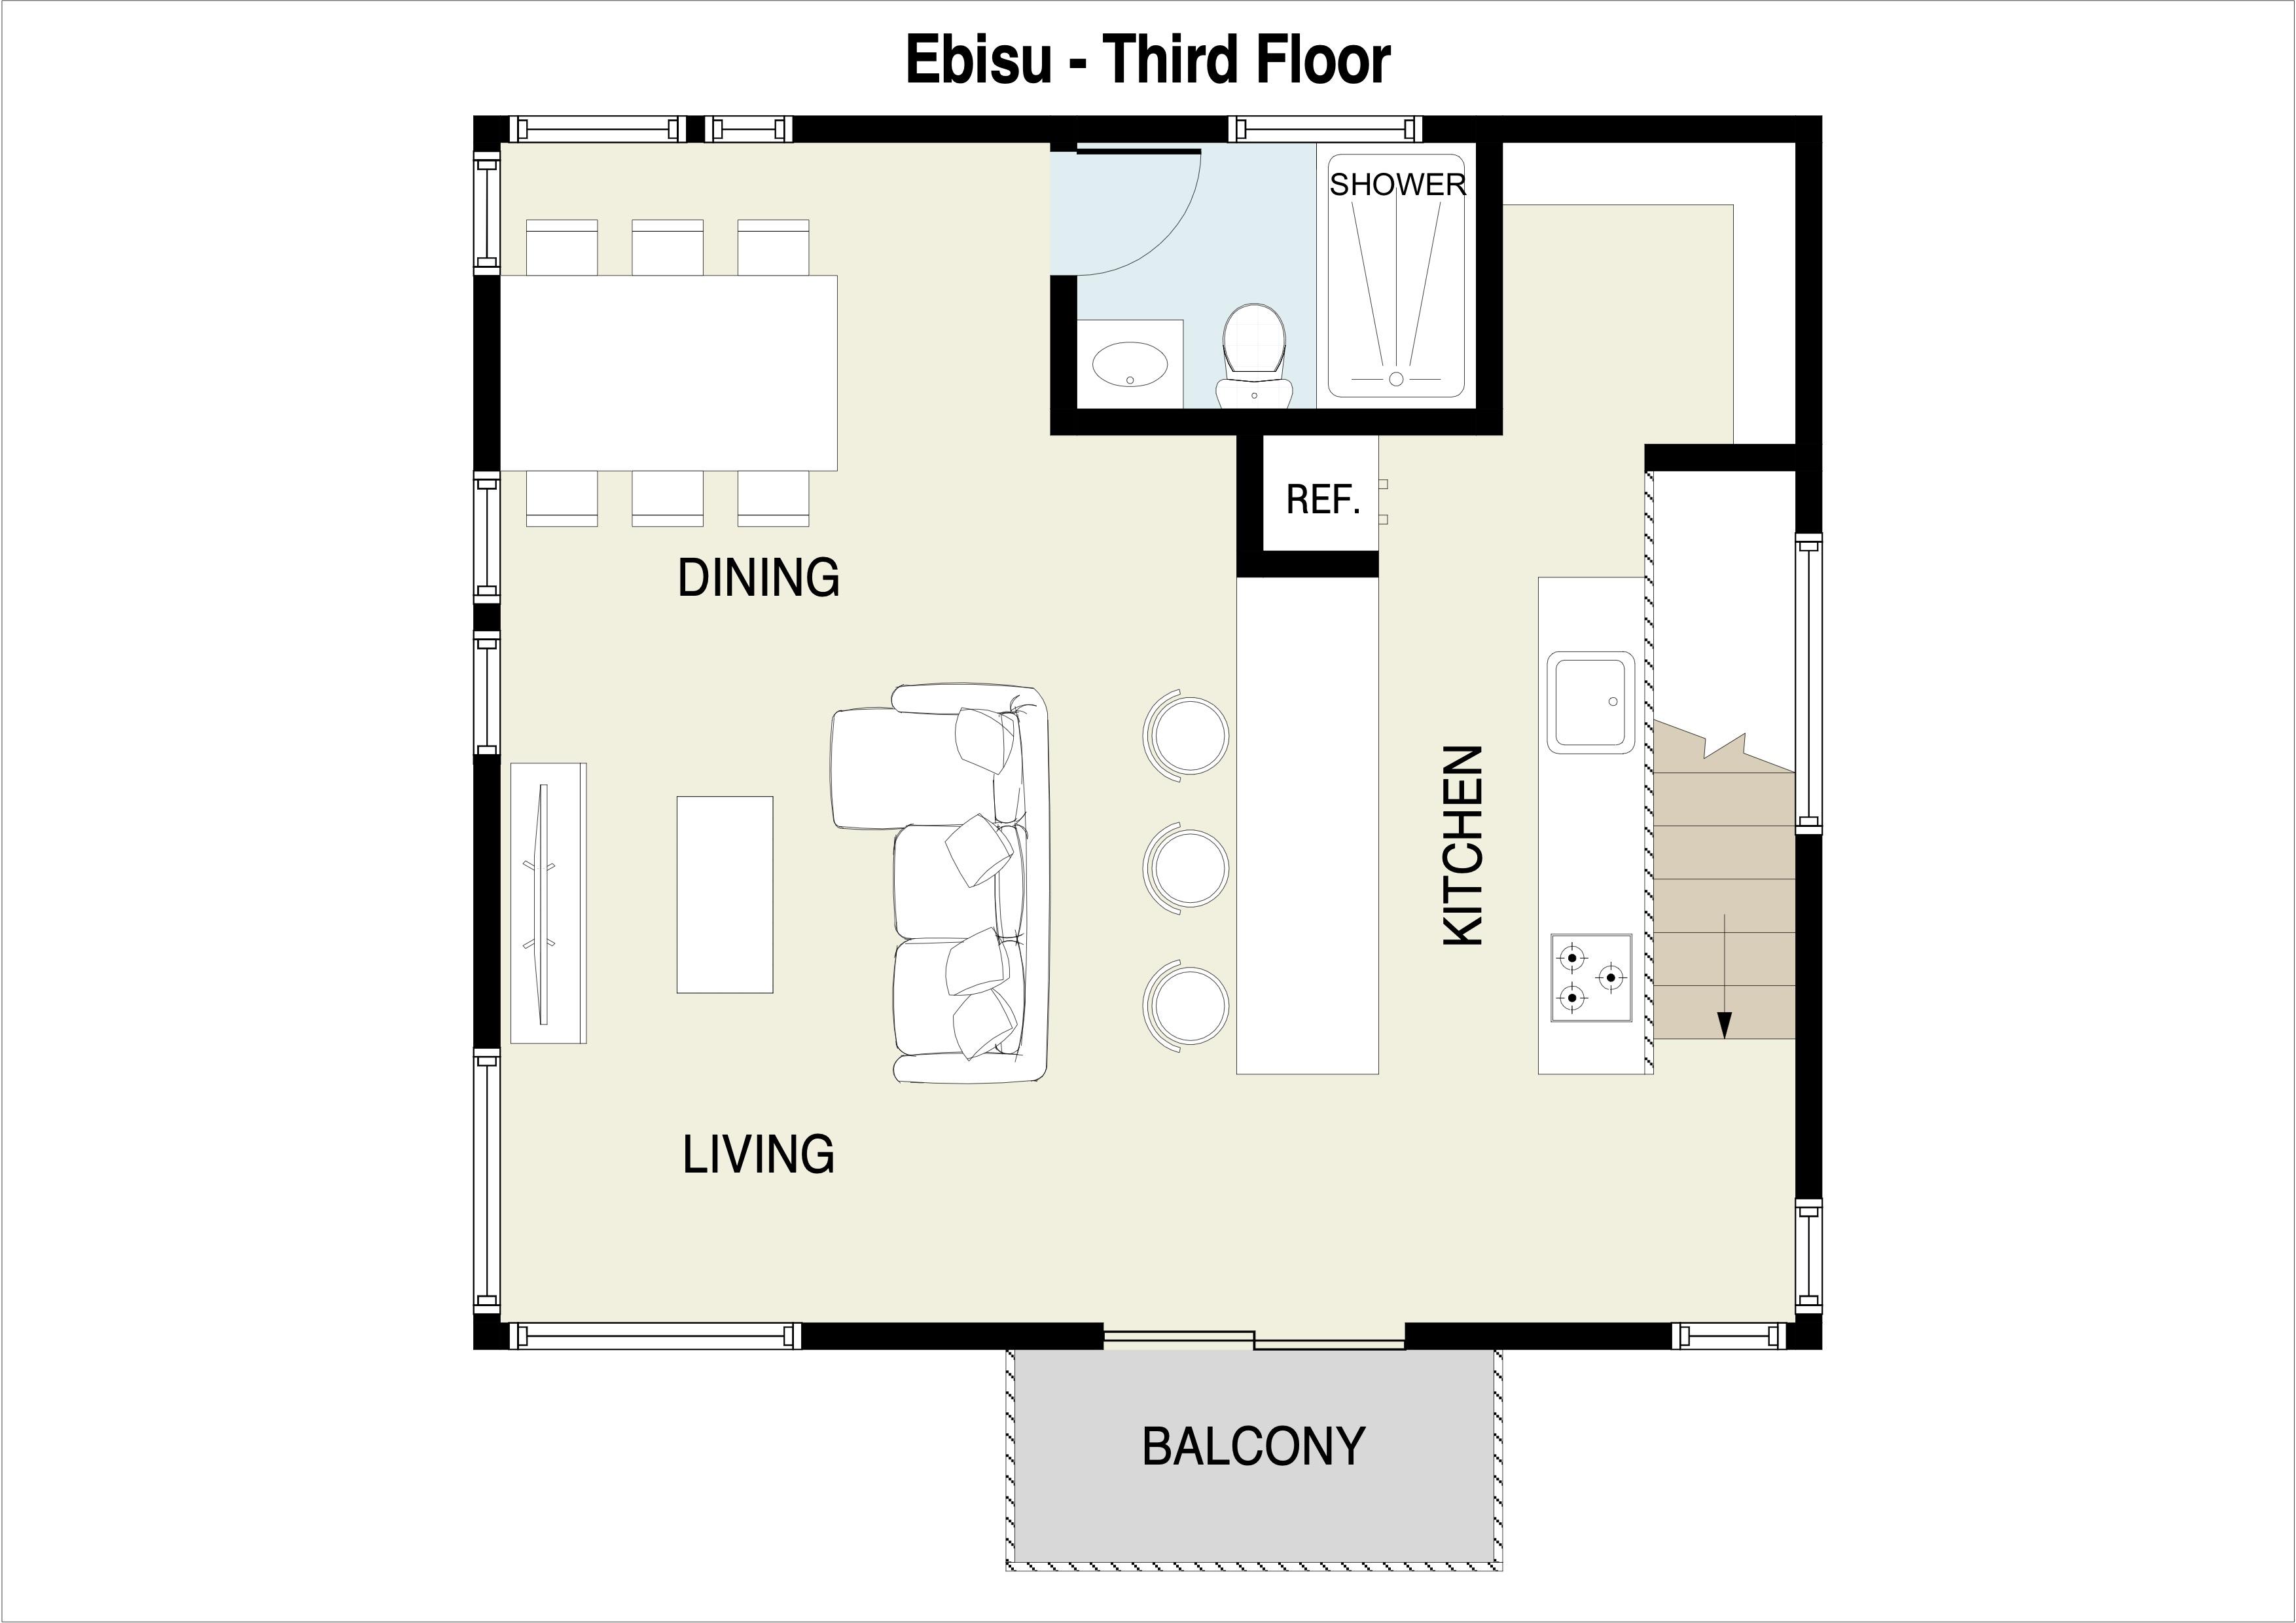 Ebisu 3rd Floor Plan